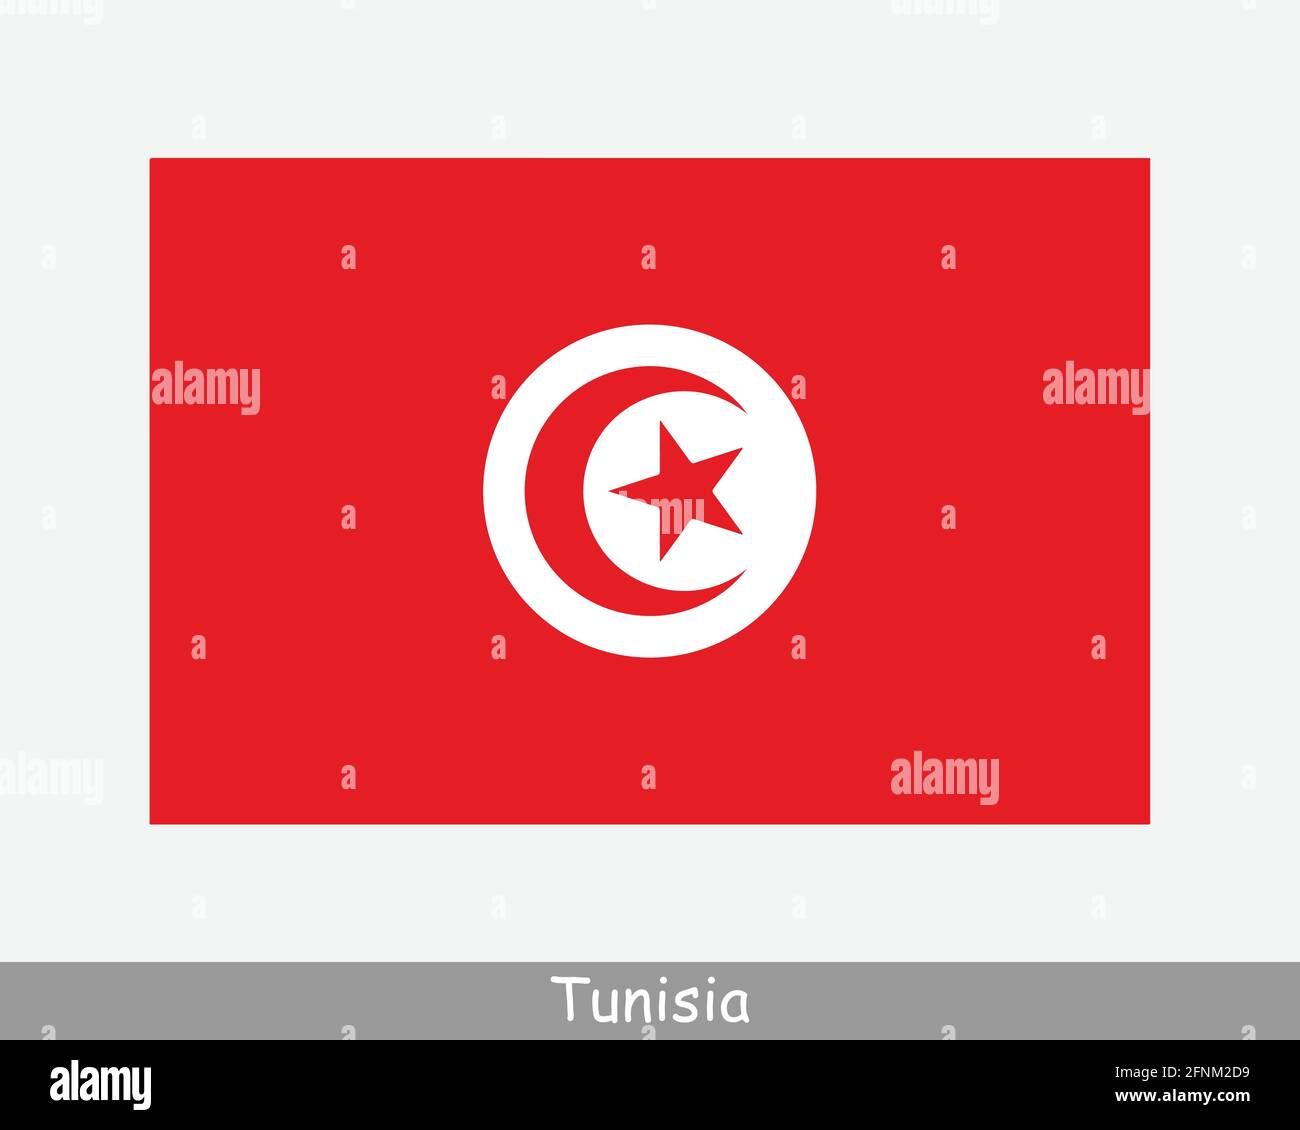 Nationale Flagge Tunesiens. Tunesische Landesflagge. Republik Tunesien detailliertes Banner. EPS-Vektorgrafik Datei ausschneiden Stock Vektor